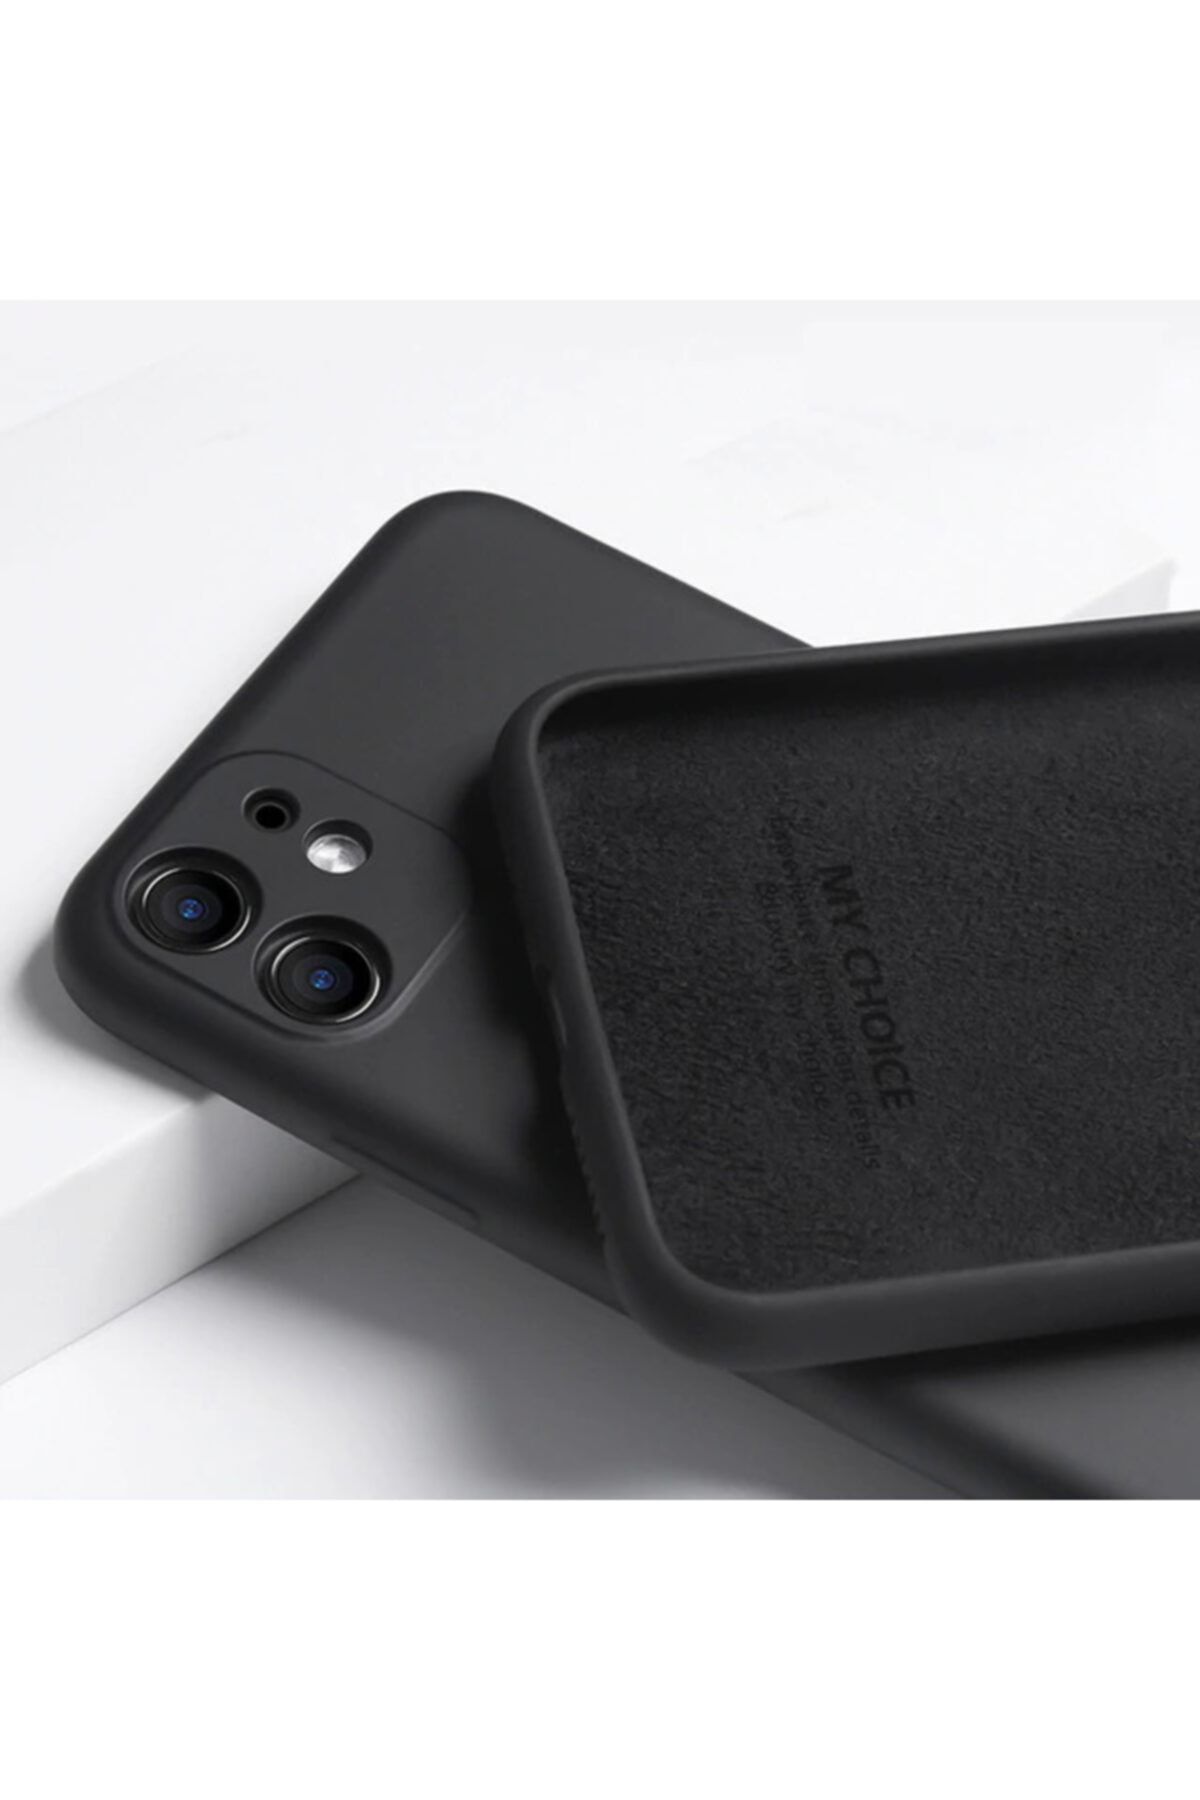 Fibaks Apple Iphone 11 Uyumlu Kılıf 3d Kamera Korumalı Içi Kadife Logosuz Lansman Kapak